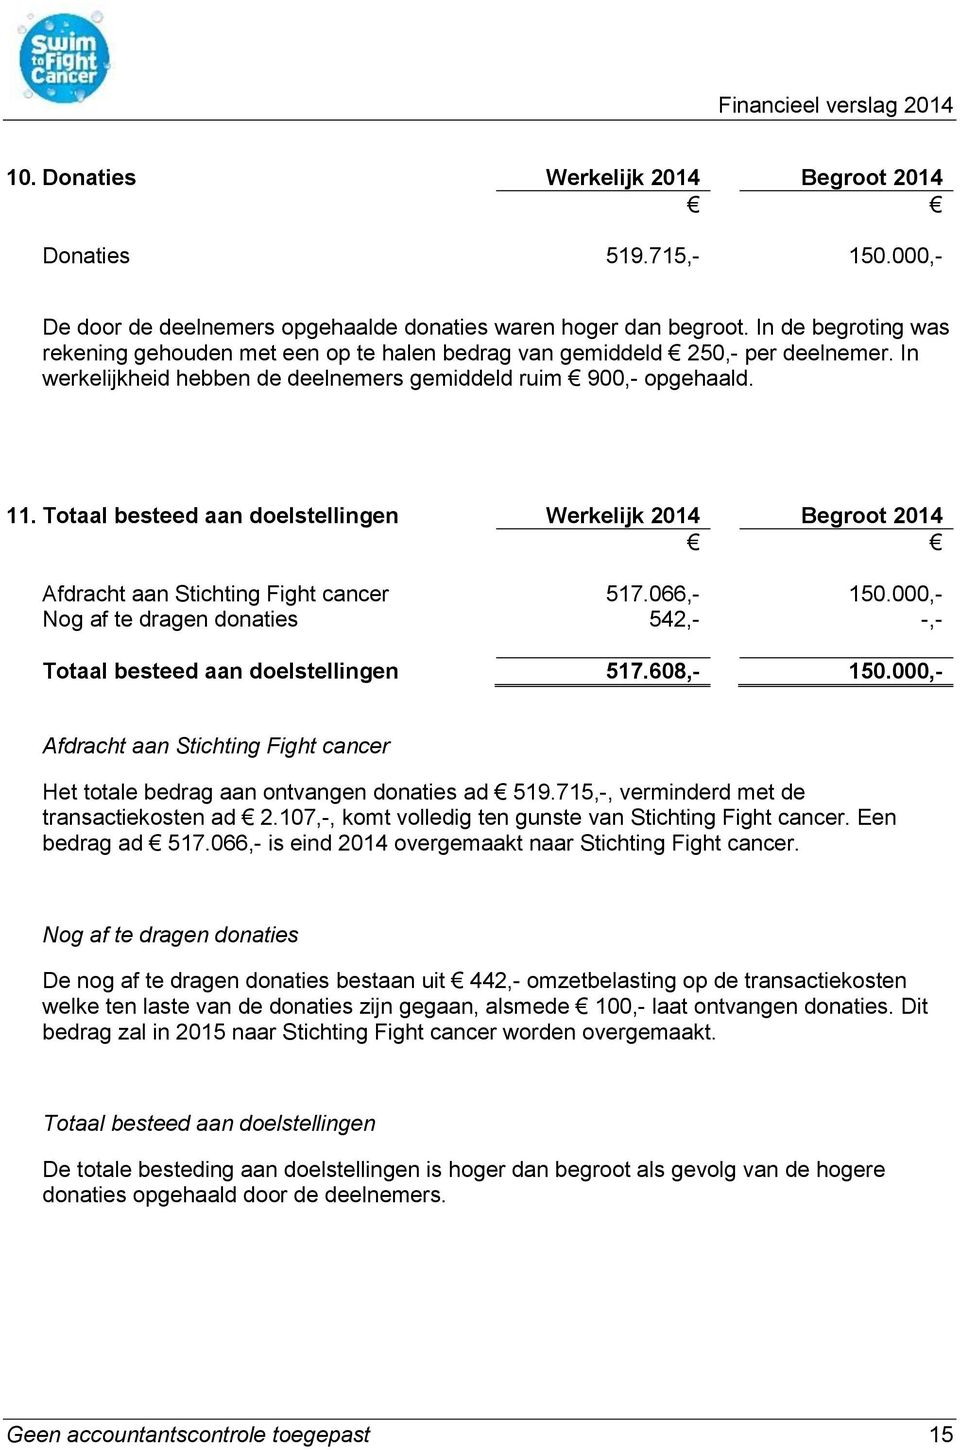 Totaal besteed aan doelstellingen Werkelijk 2014 Begroot 2014 Afdracht aan Stichting Fight cancer 517.066,- 150.000,- Nog af te dragen donaties 542,- -,- Totaal besteed aan doelstellingen 517.